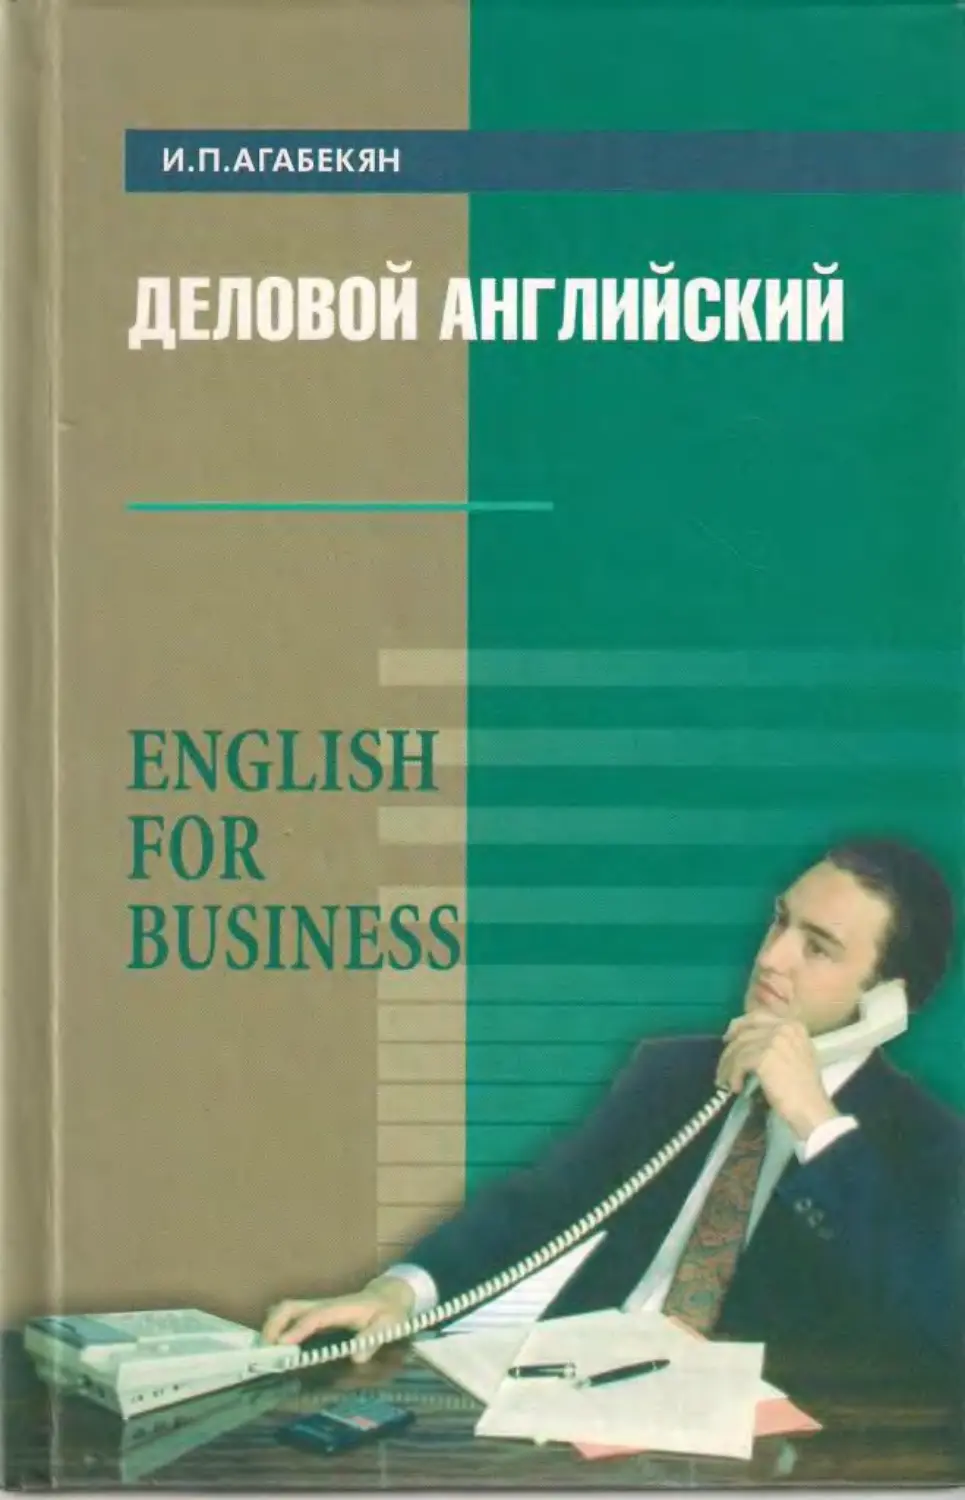 Деловой английский учебник. Деловой английский. Деловой английский книга. Бизнес английский учебник. Агабекян английский.